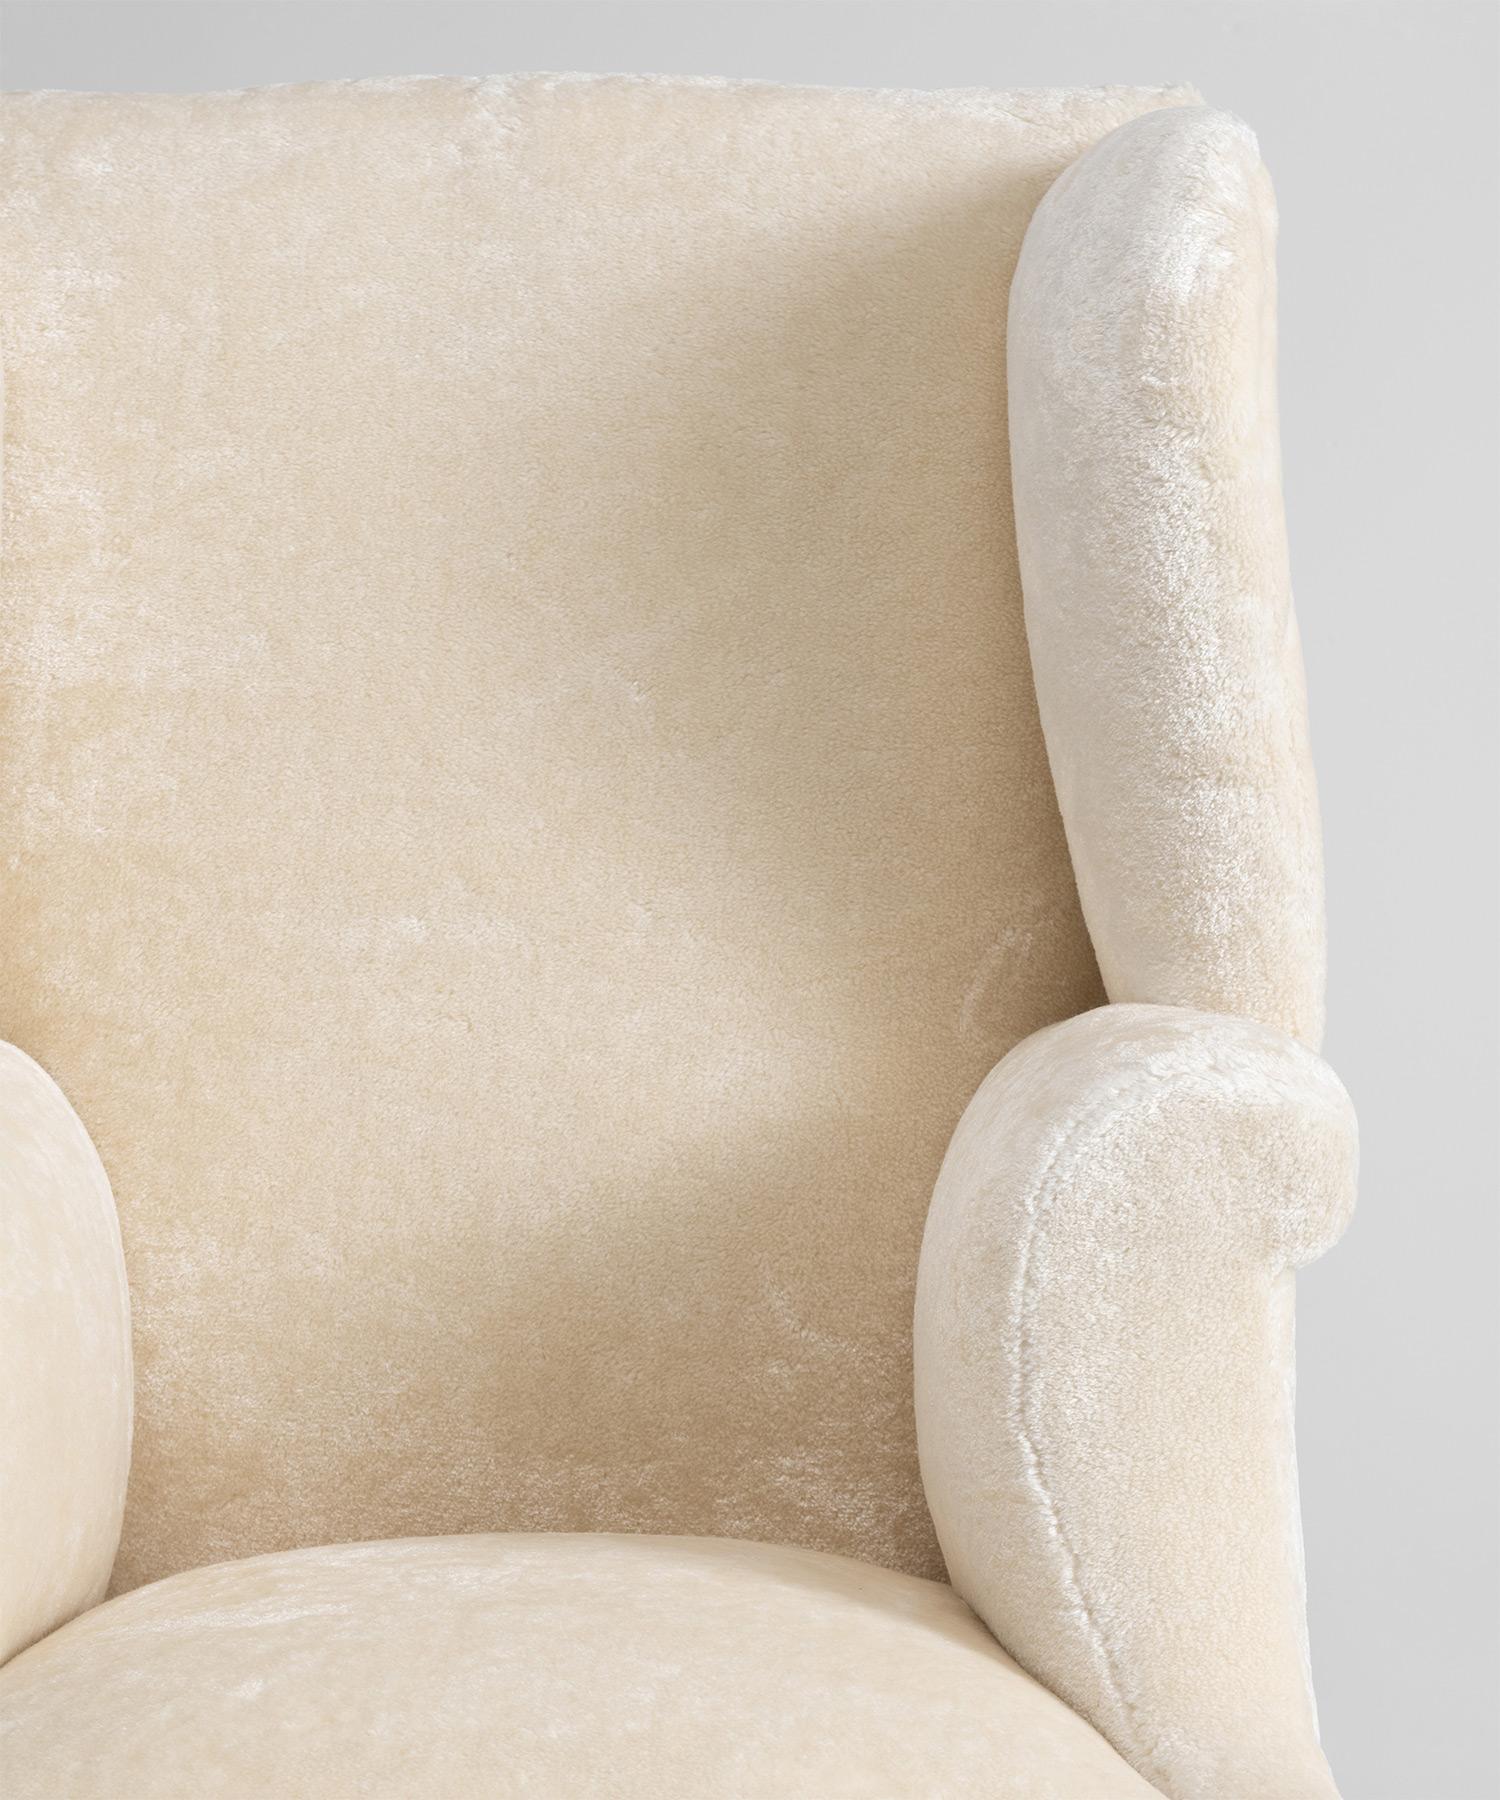 Wingback Armchair in Cotton Blend by Dedar Milano, England circa 1800 2